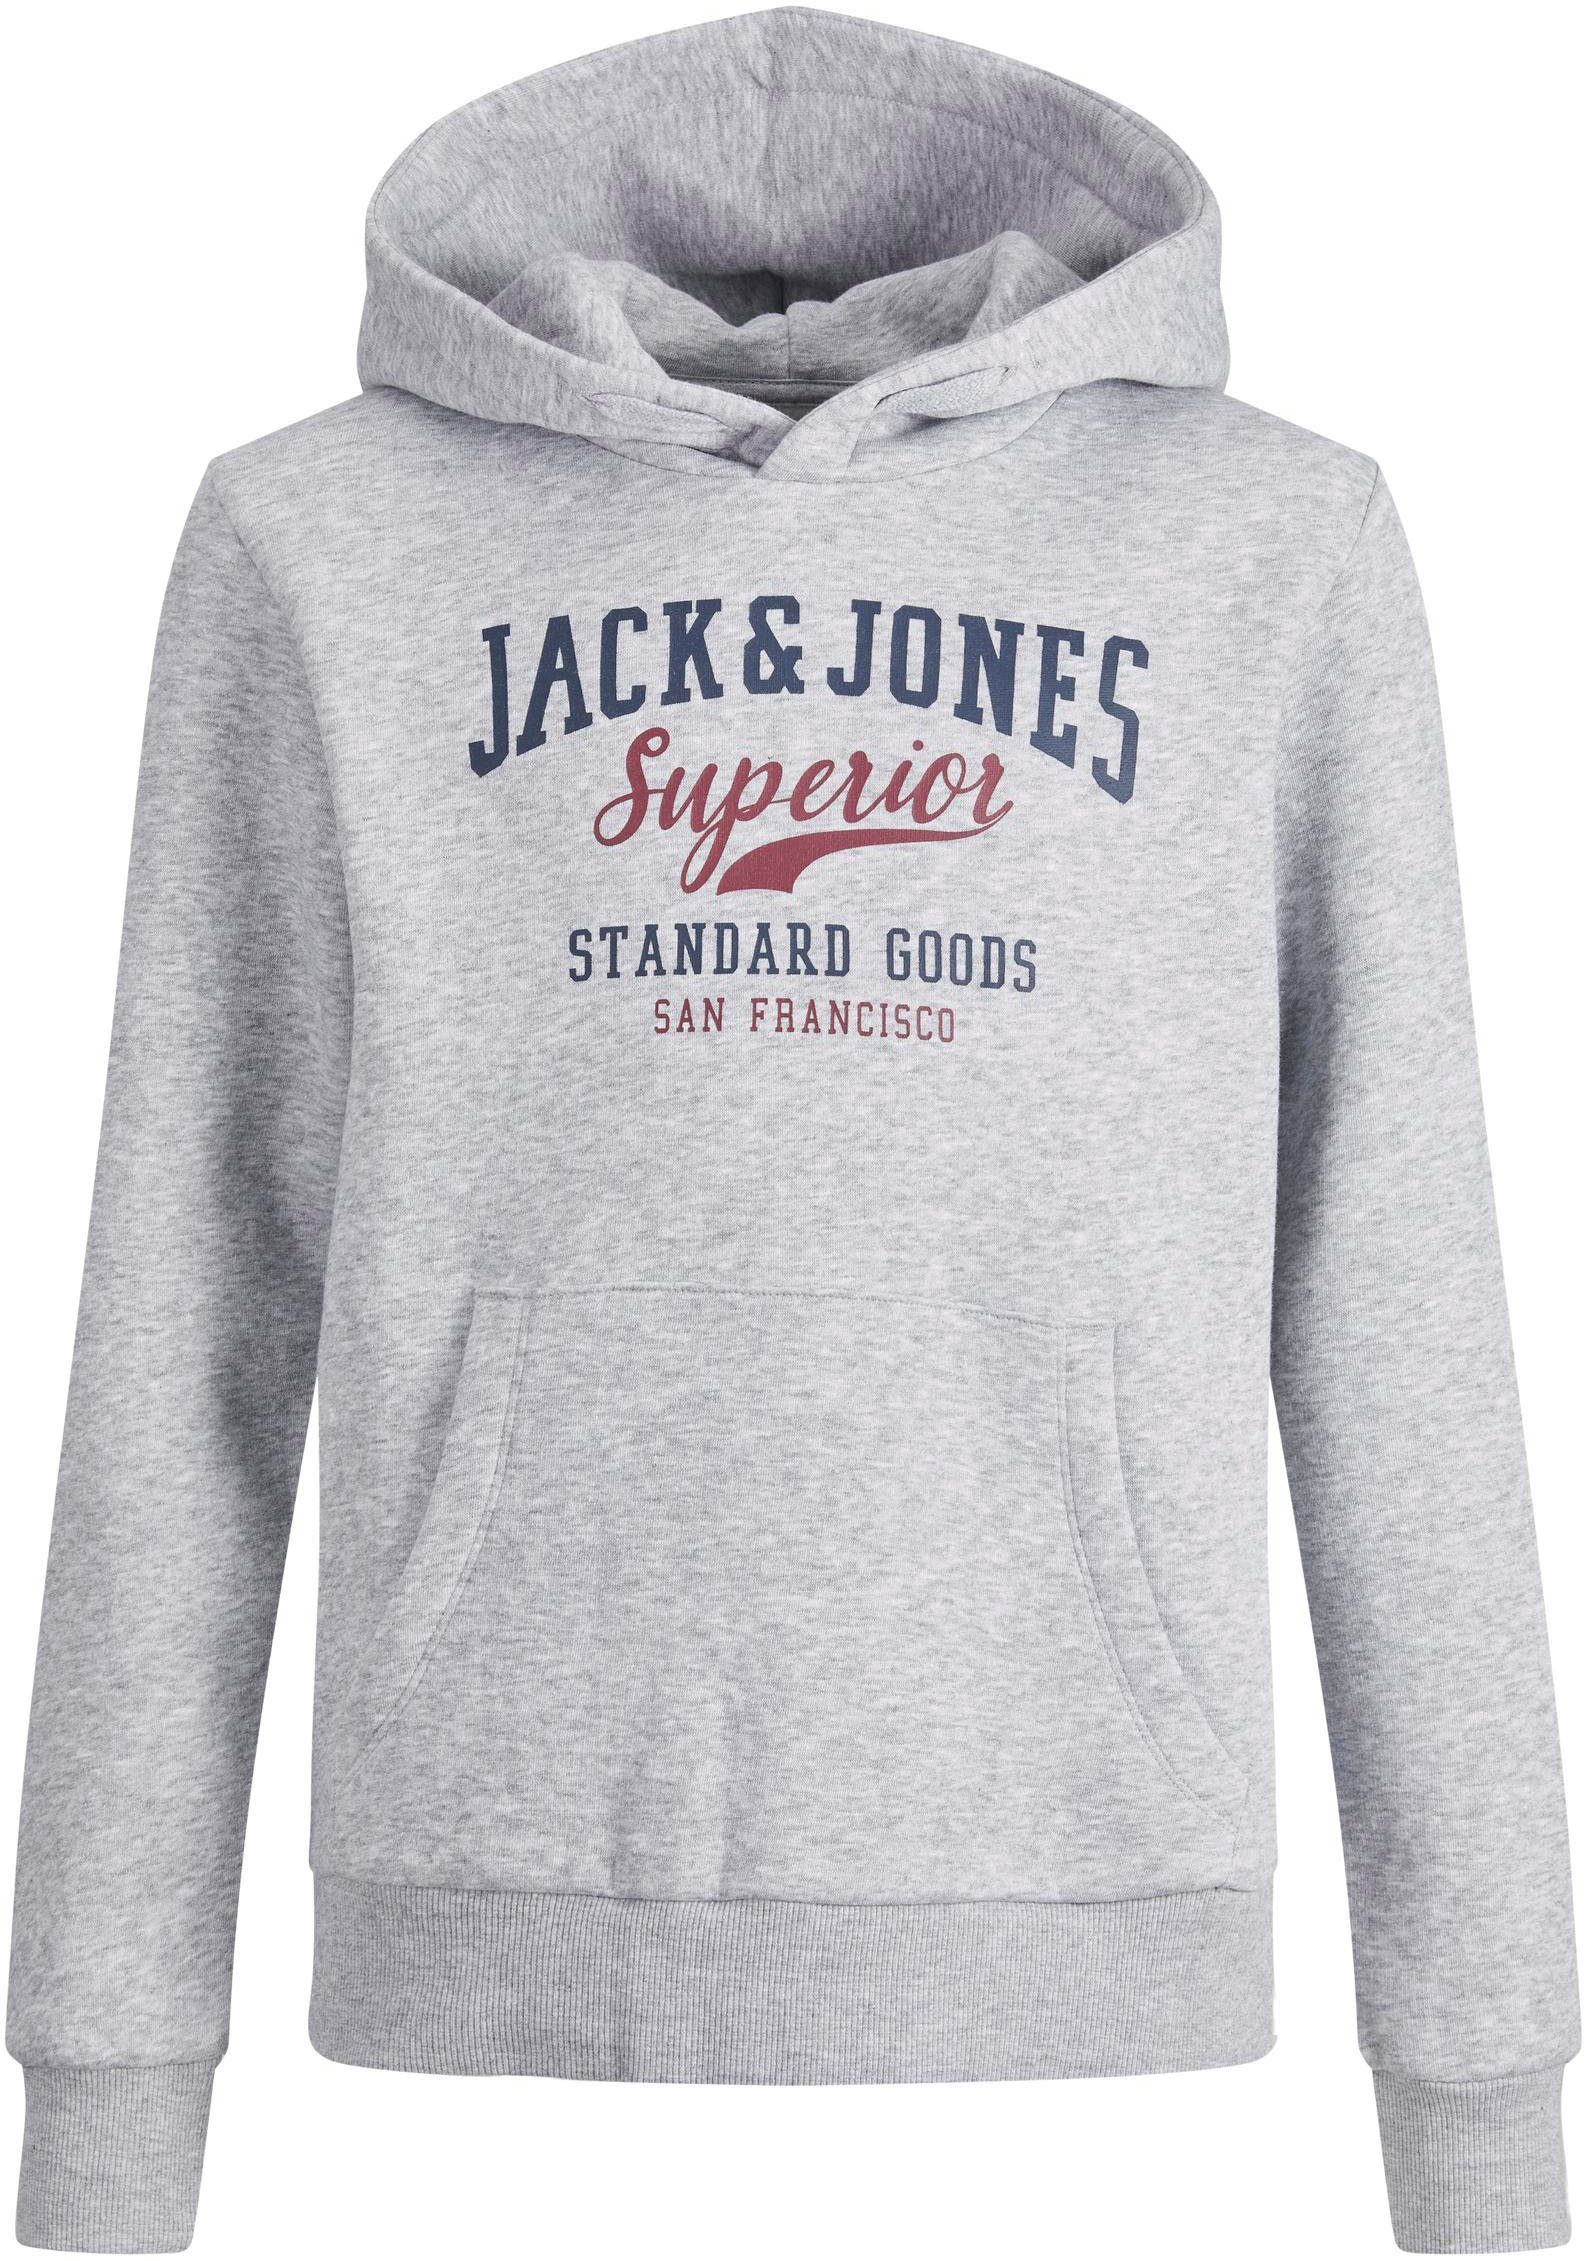 Jack & Jones Junior Kapuzensweatshirt light grey melange